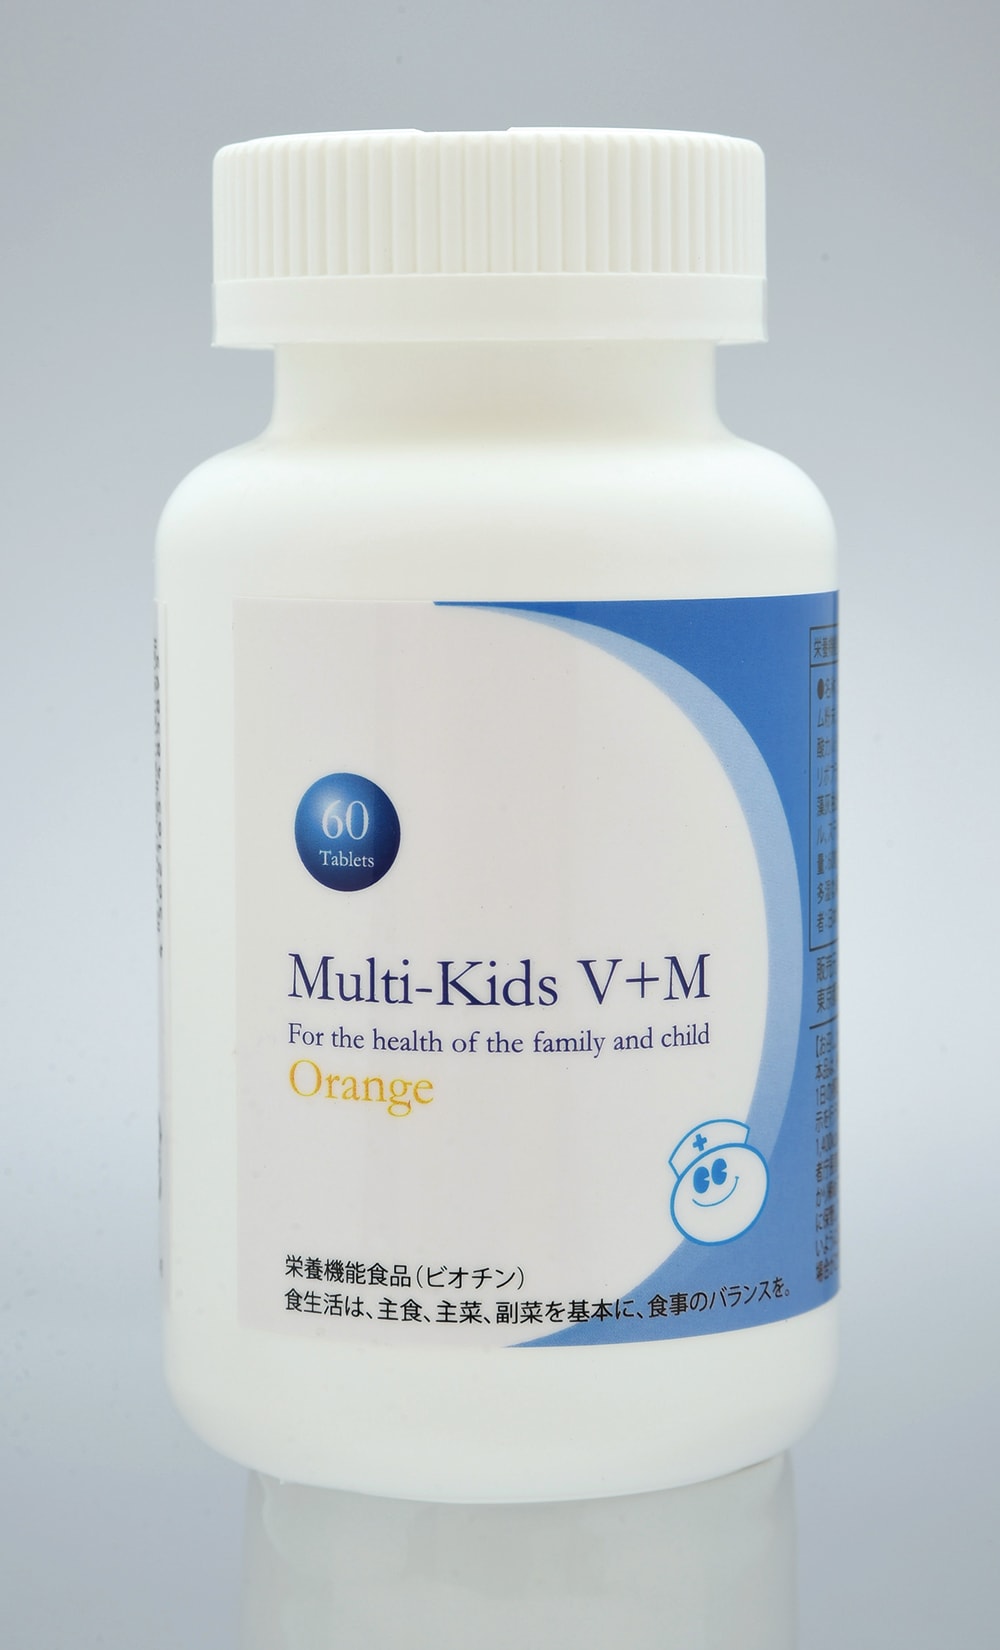 Multi-Kids V+M